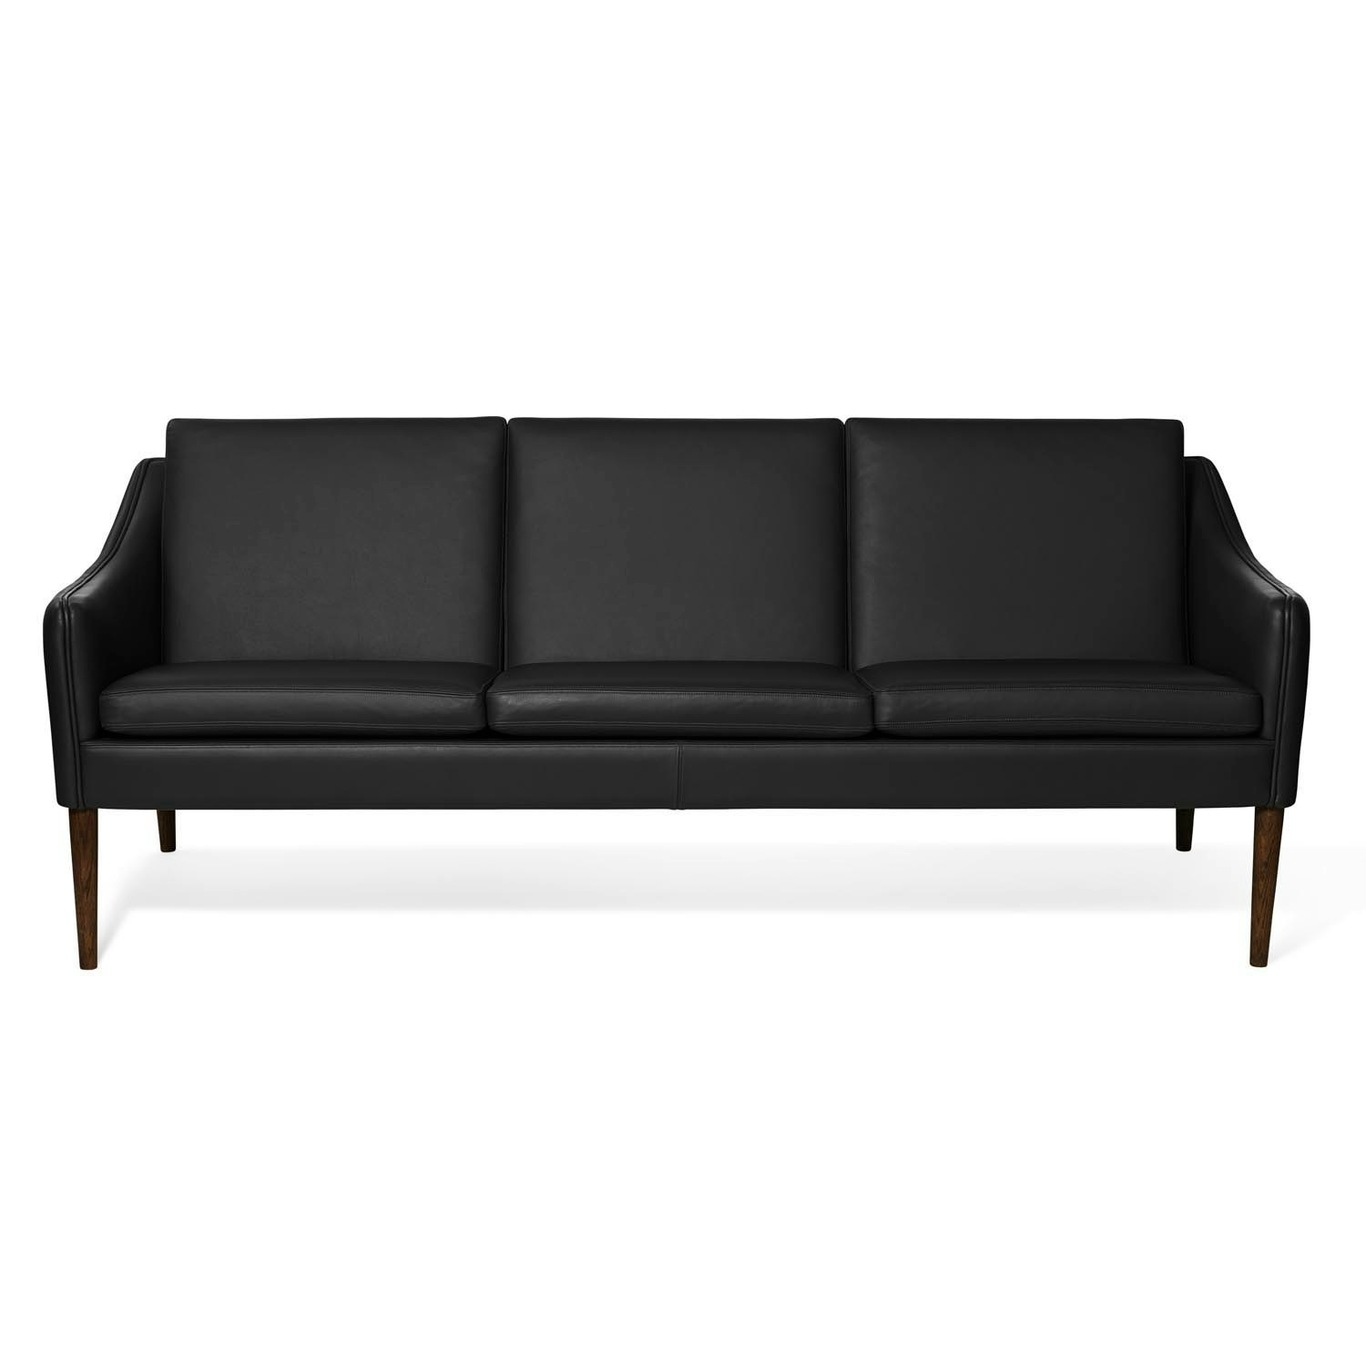 Mr. Olsen 3-Seater Sofa, Black / Walnut Oiled Oak